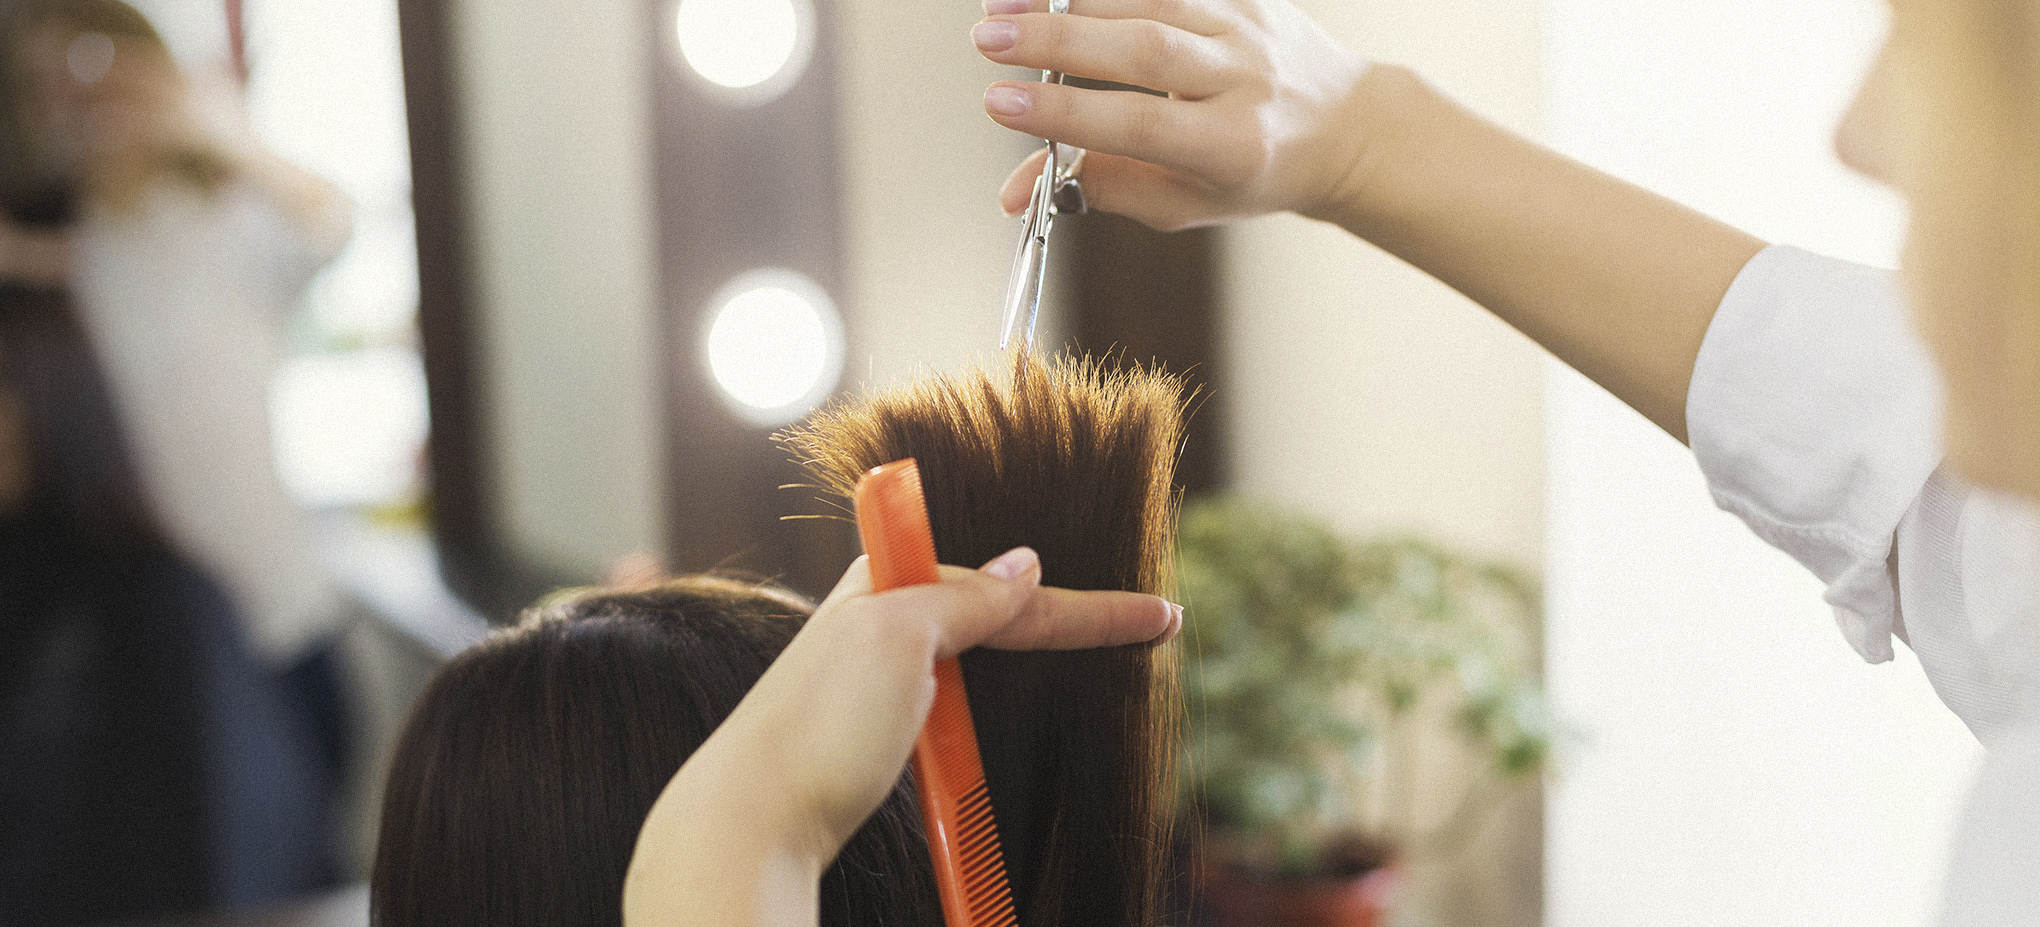 Những sai lầm khiến tóc bạn bị chẻ ngọn - Tuổi Trẻ Online